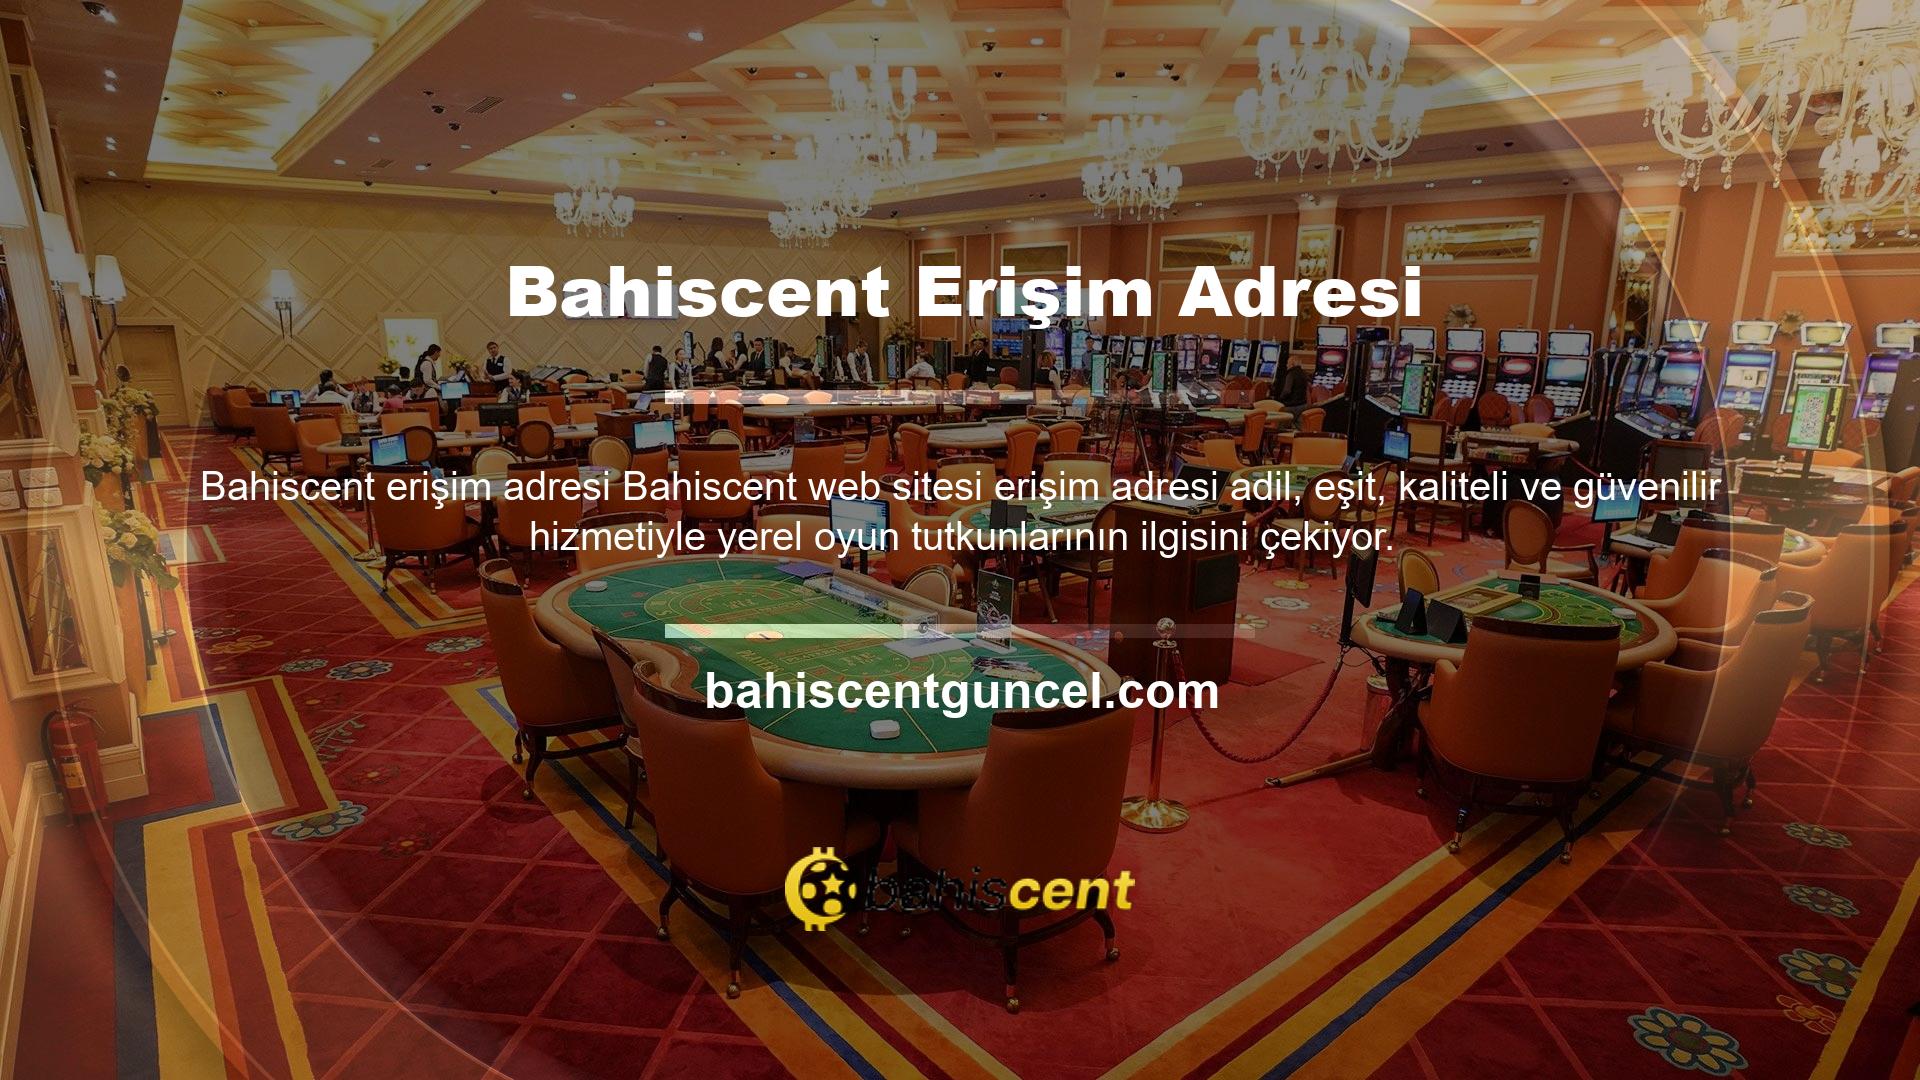 Yeni Bahiscent giriş adresi, bu web sitesini ziyaret eden mevcut aktif ziyaretçinin adresidir